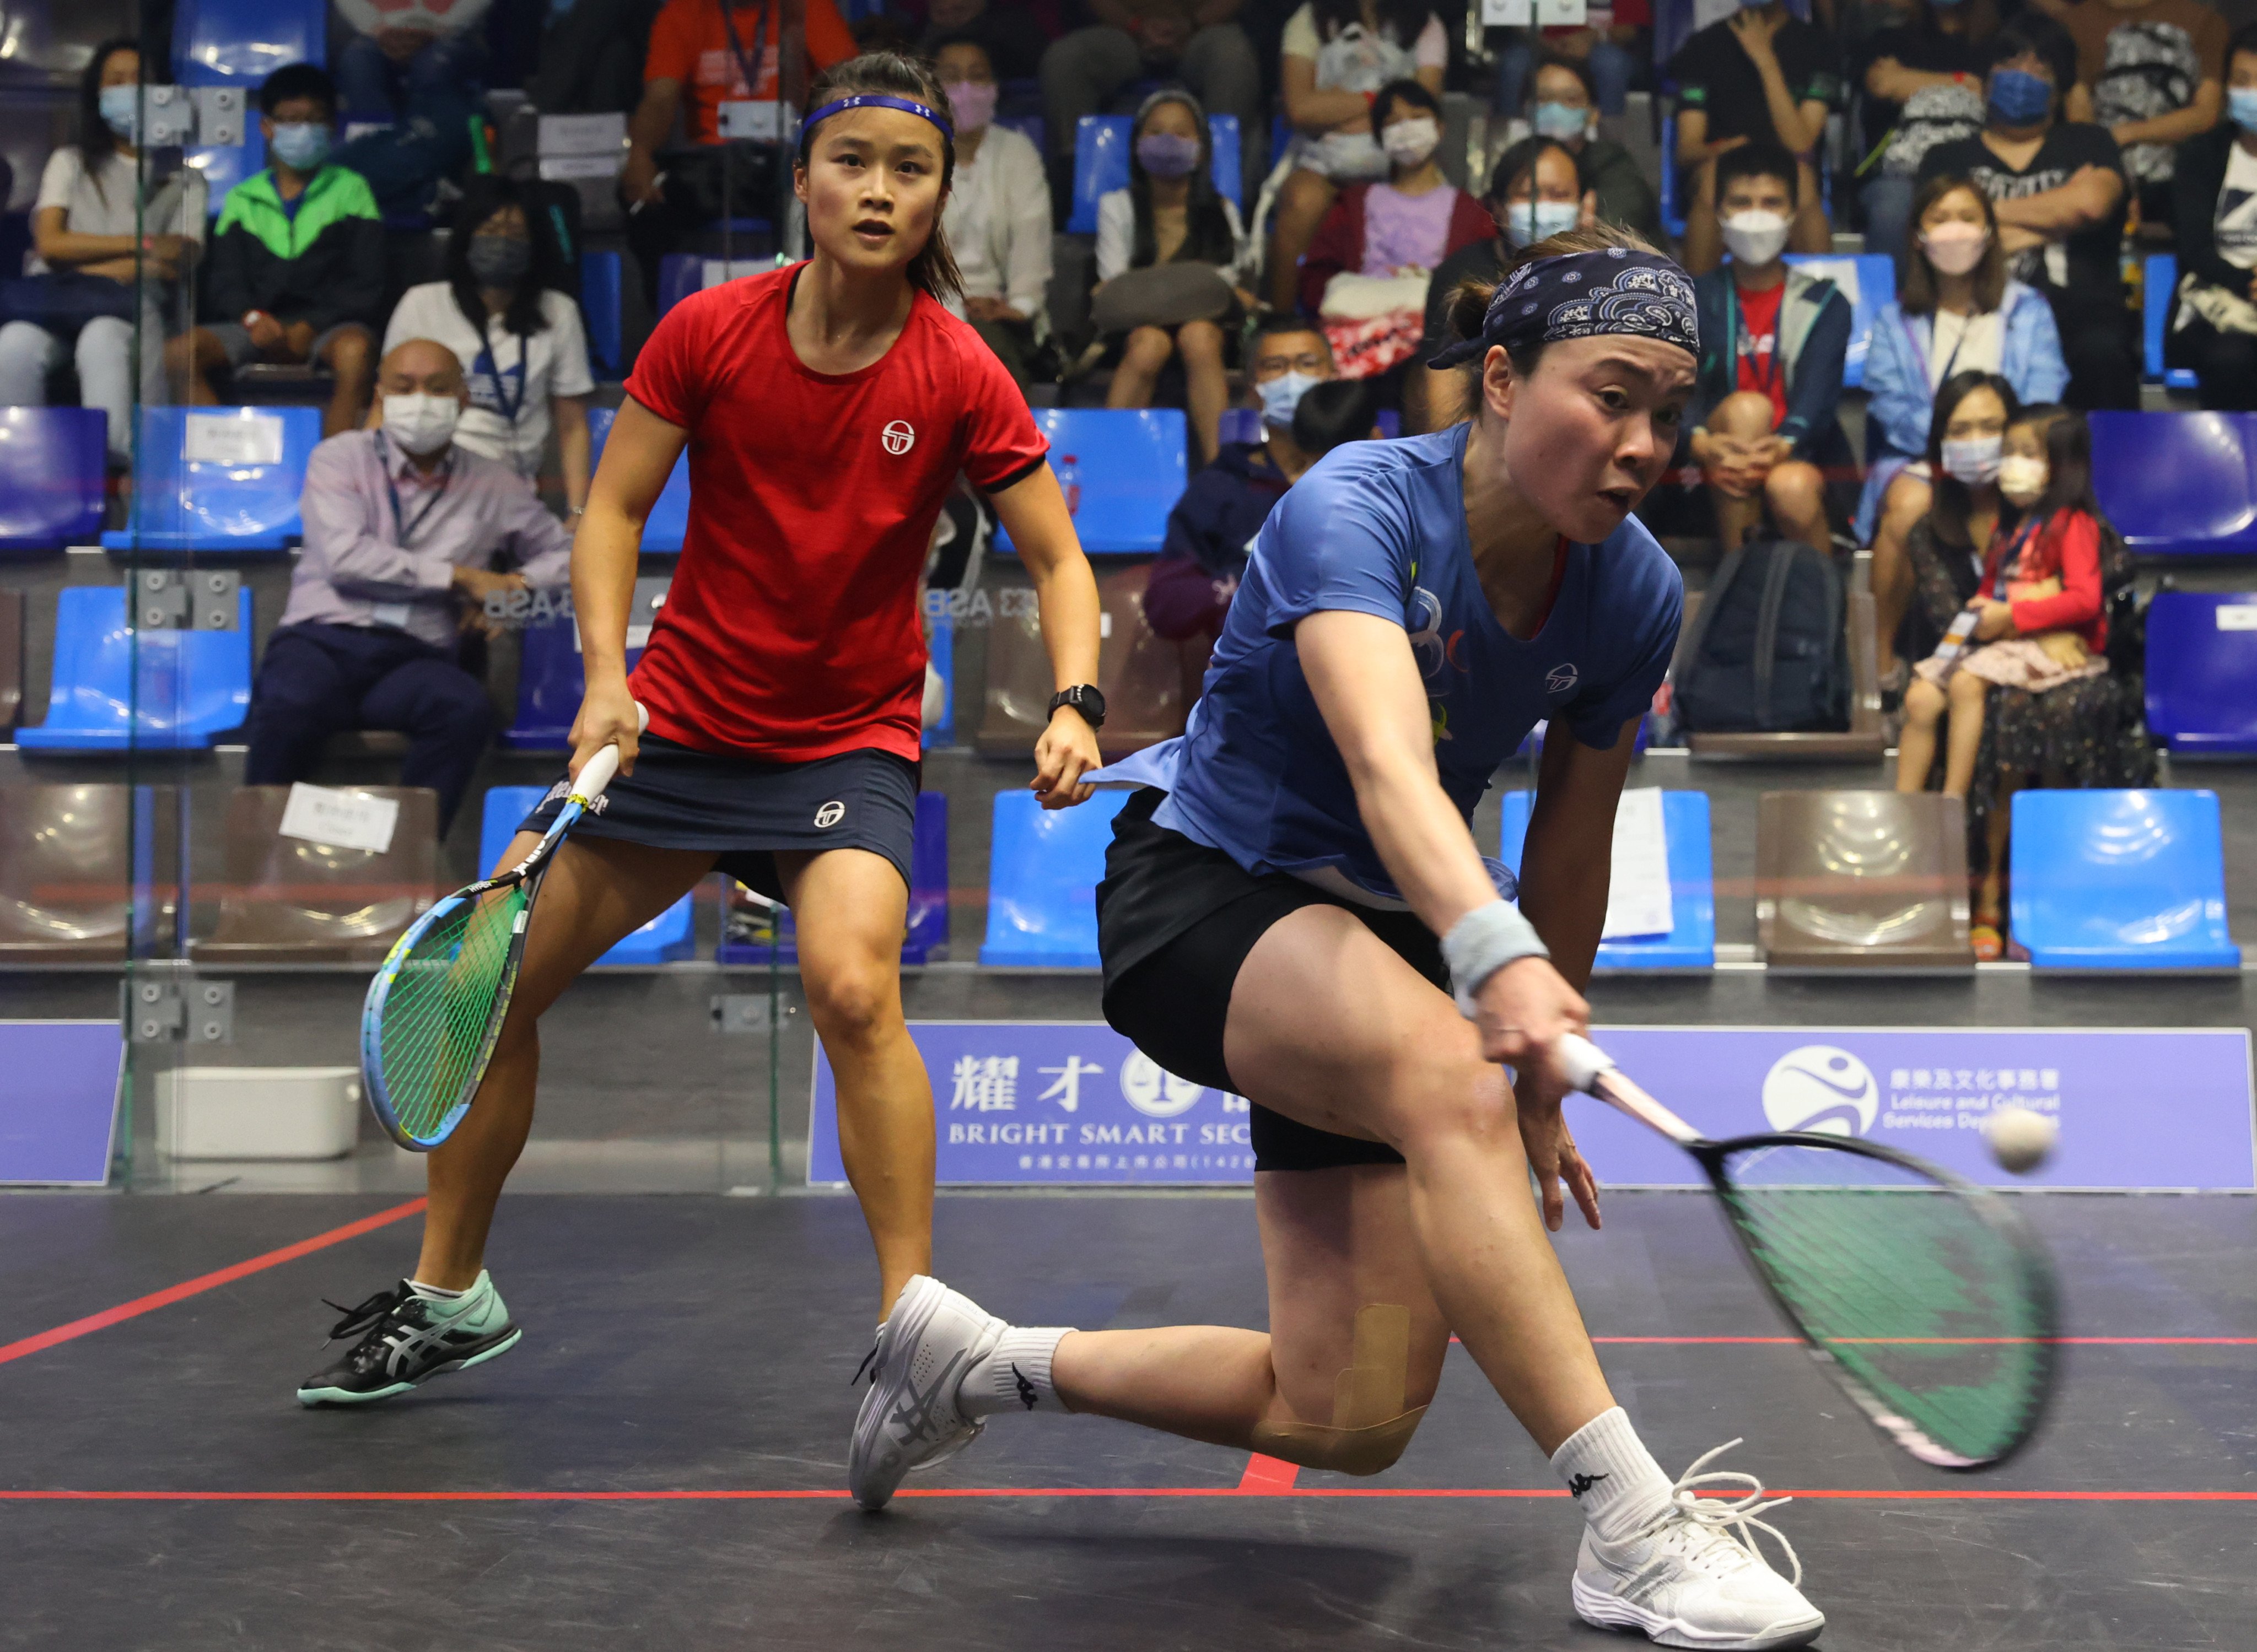 Tong Tsz-wing (right) takes on Lee Ka-yi during the final of Hong Kong Squash Championships. Photo: Dickson Lee